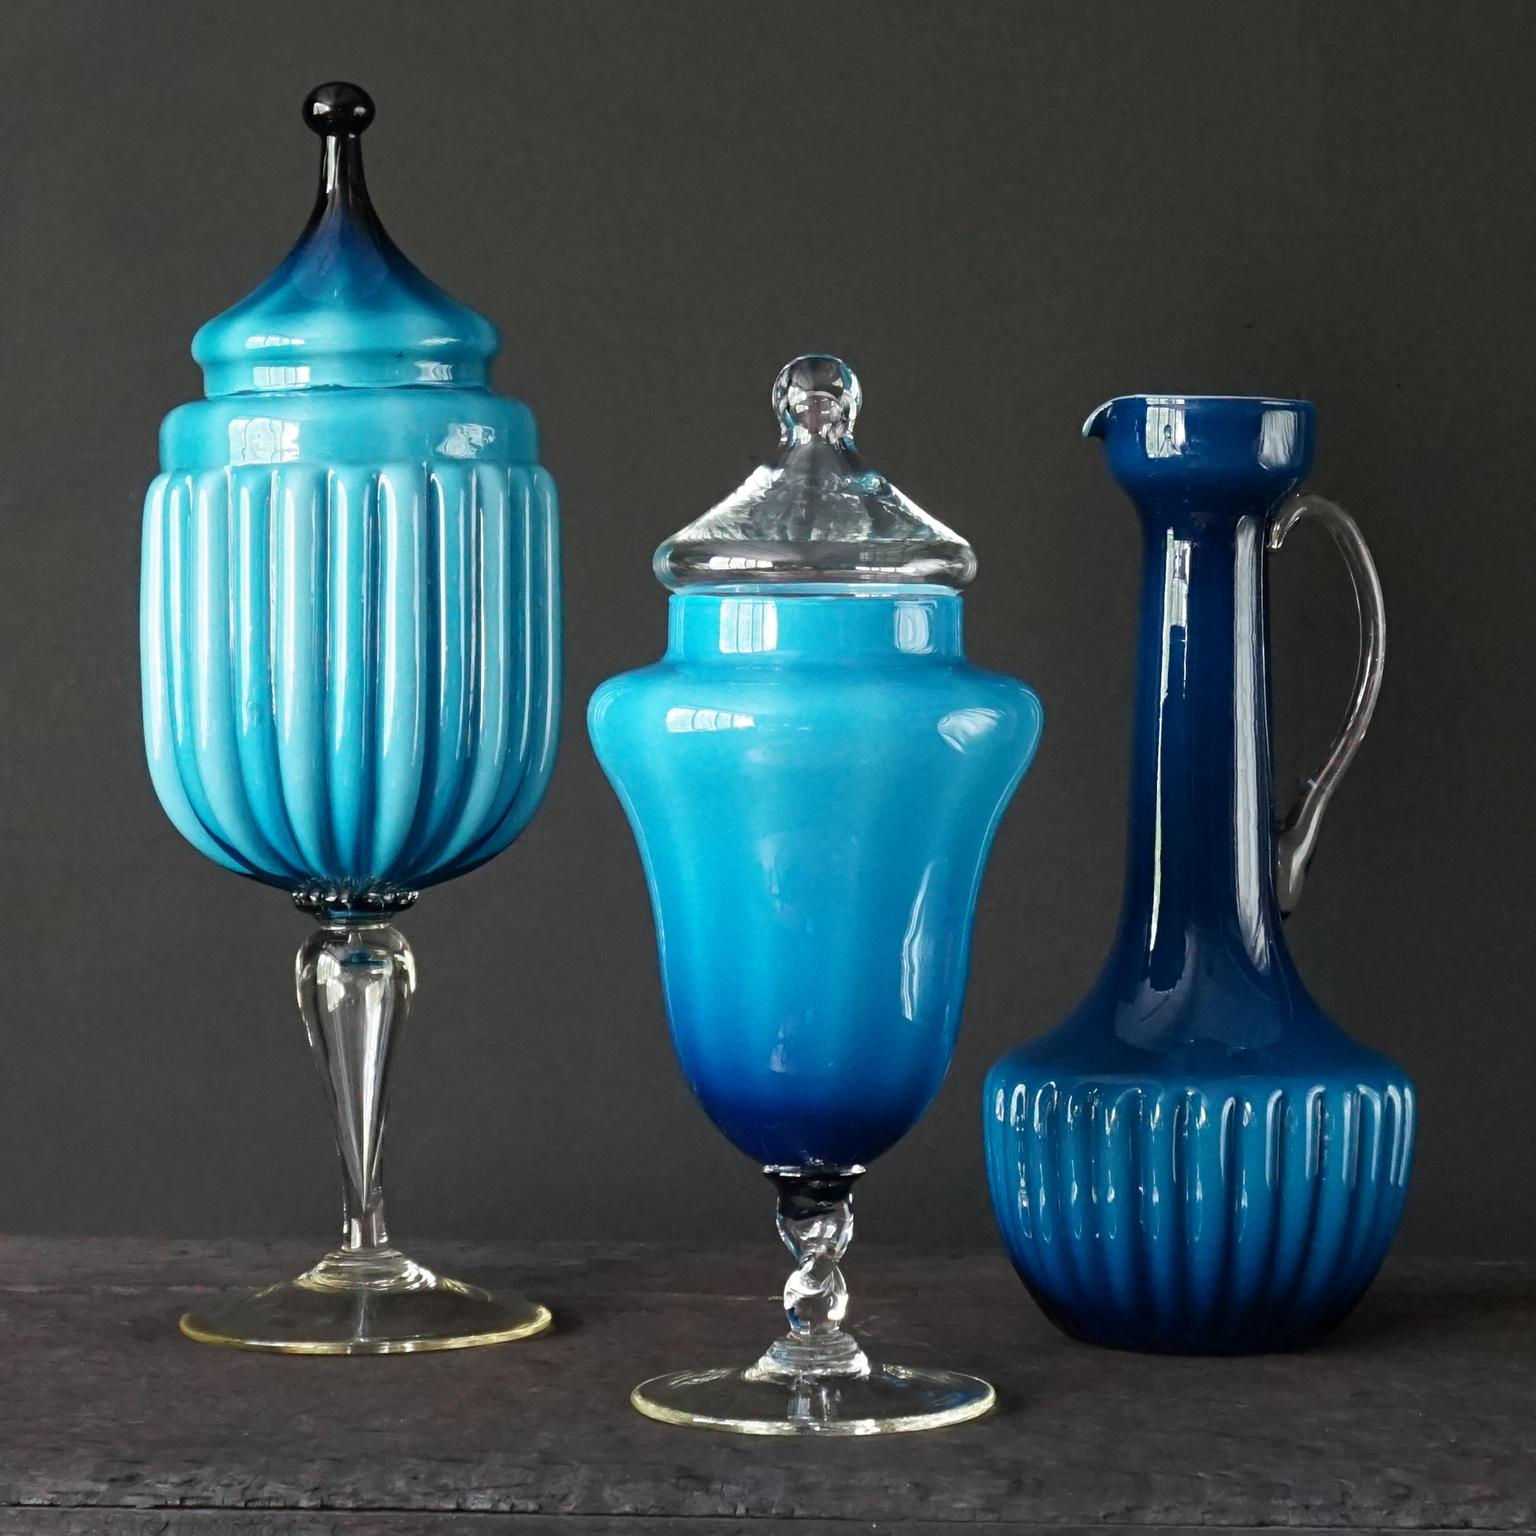 Très joli ensemble de trois vases en verre moulé Empoli Rossini et Stelvio Opalina Fiorentina, datant des années 1960. Un pichet, un vase ou une carafe haute et deux pots de confiserie ou d'apothicaire. 
Dans un ton bleu profond assorti aux